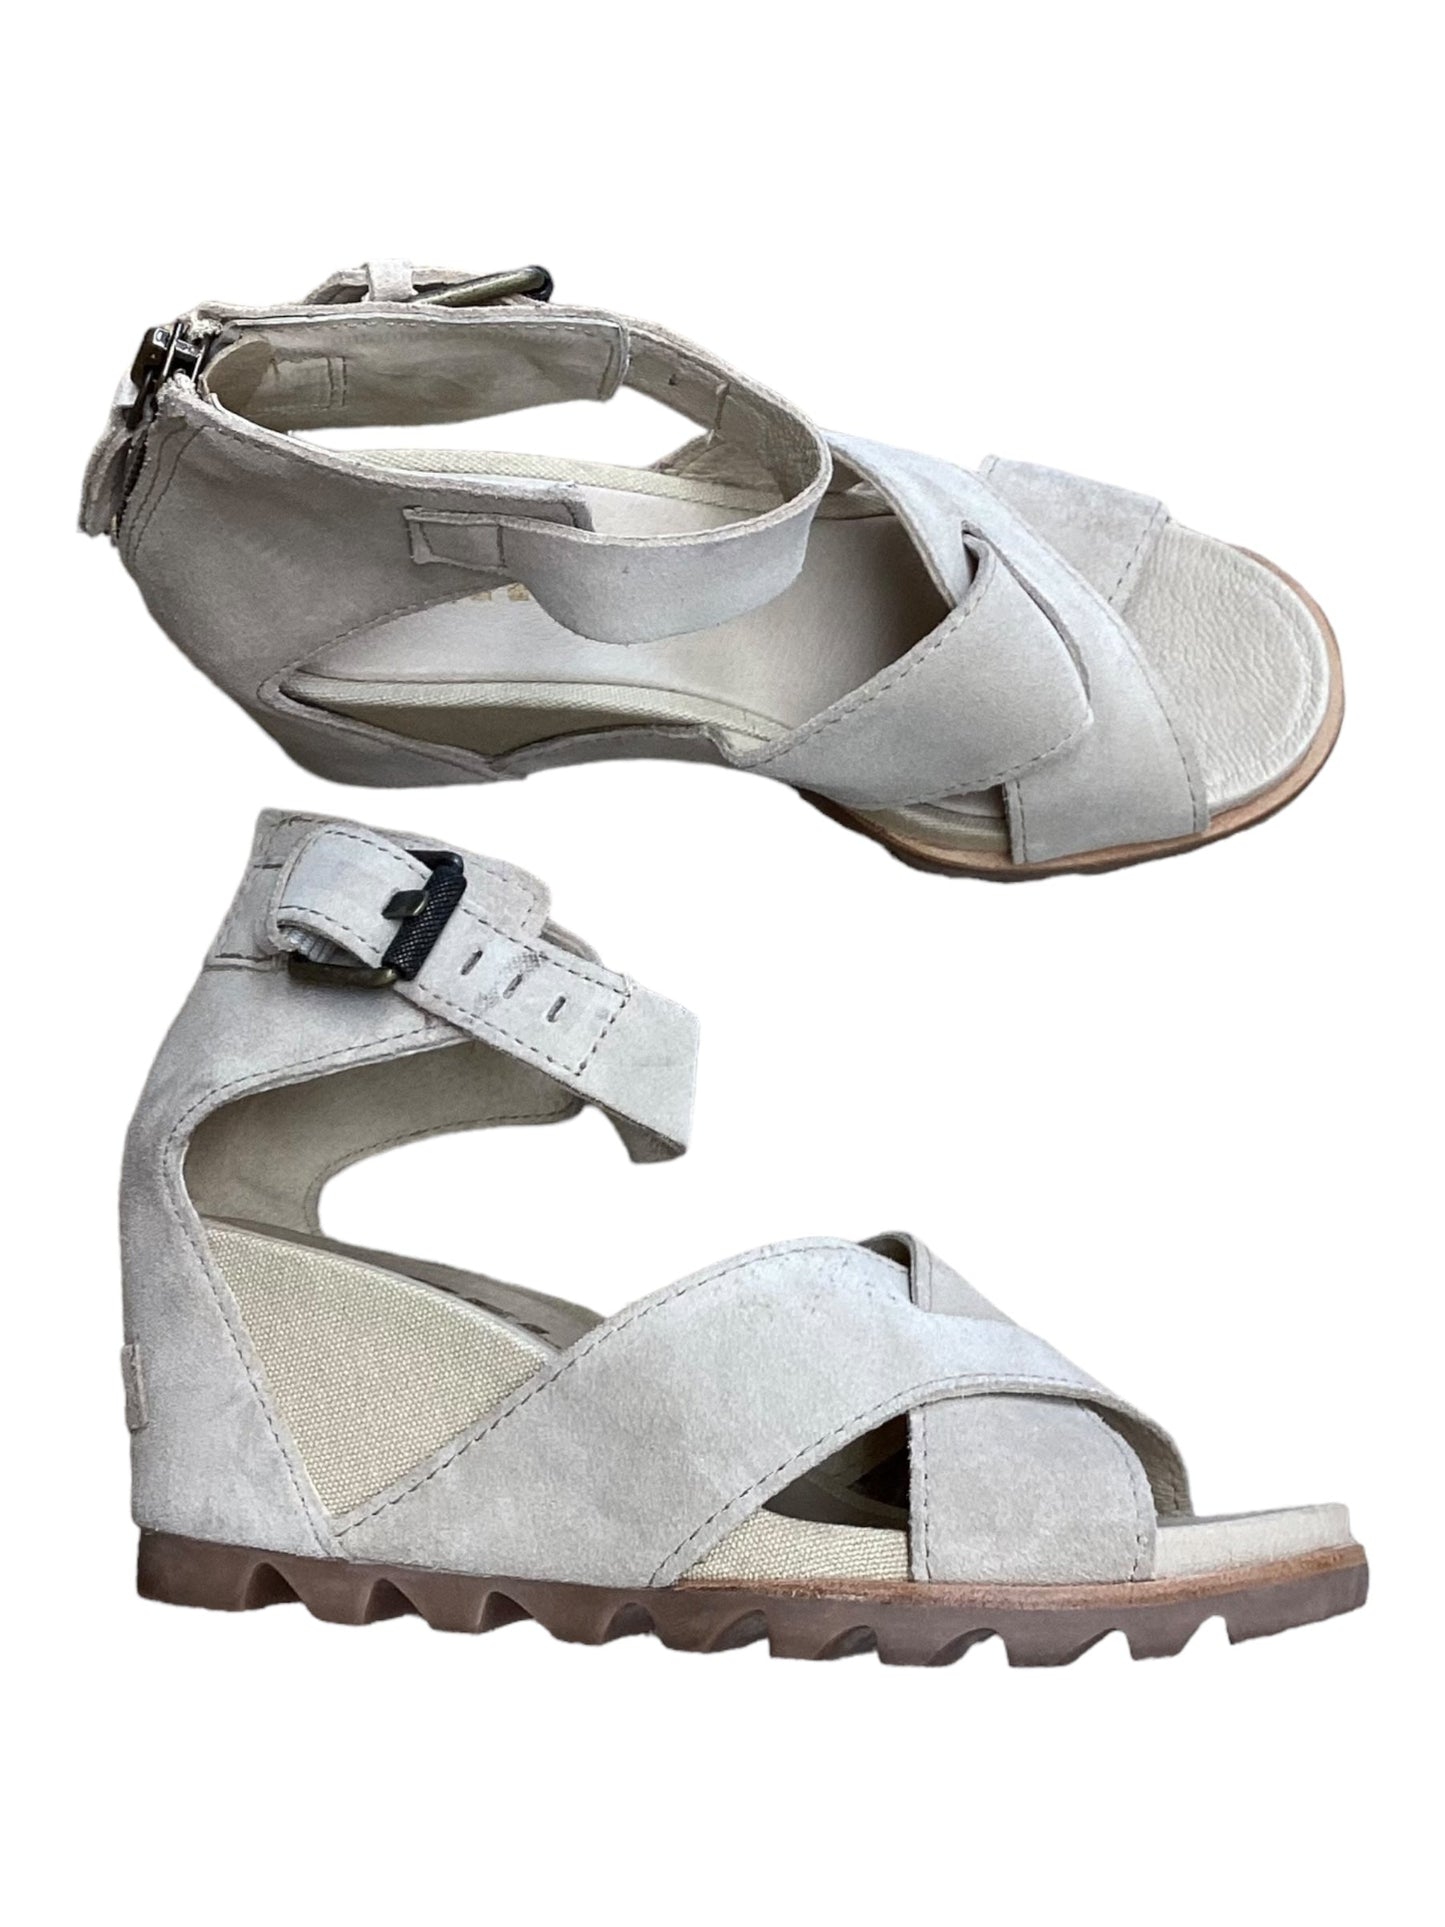 Beige Sandals Heels Wedge Sorel, Size 7.5